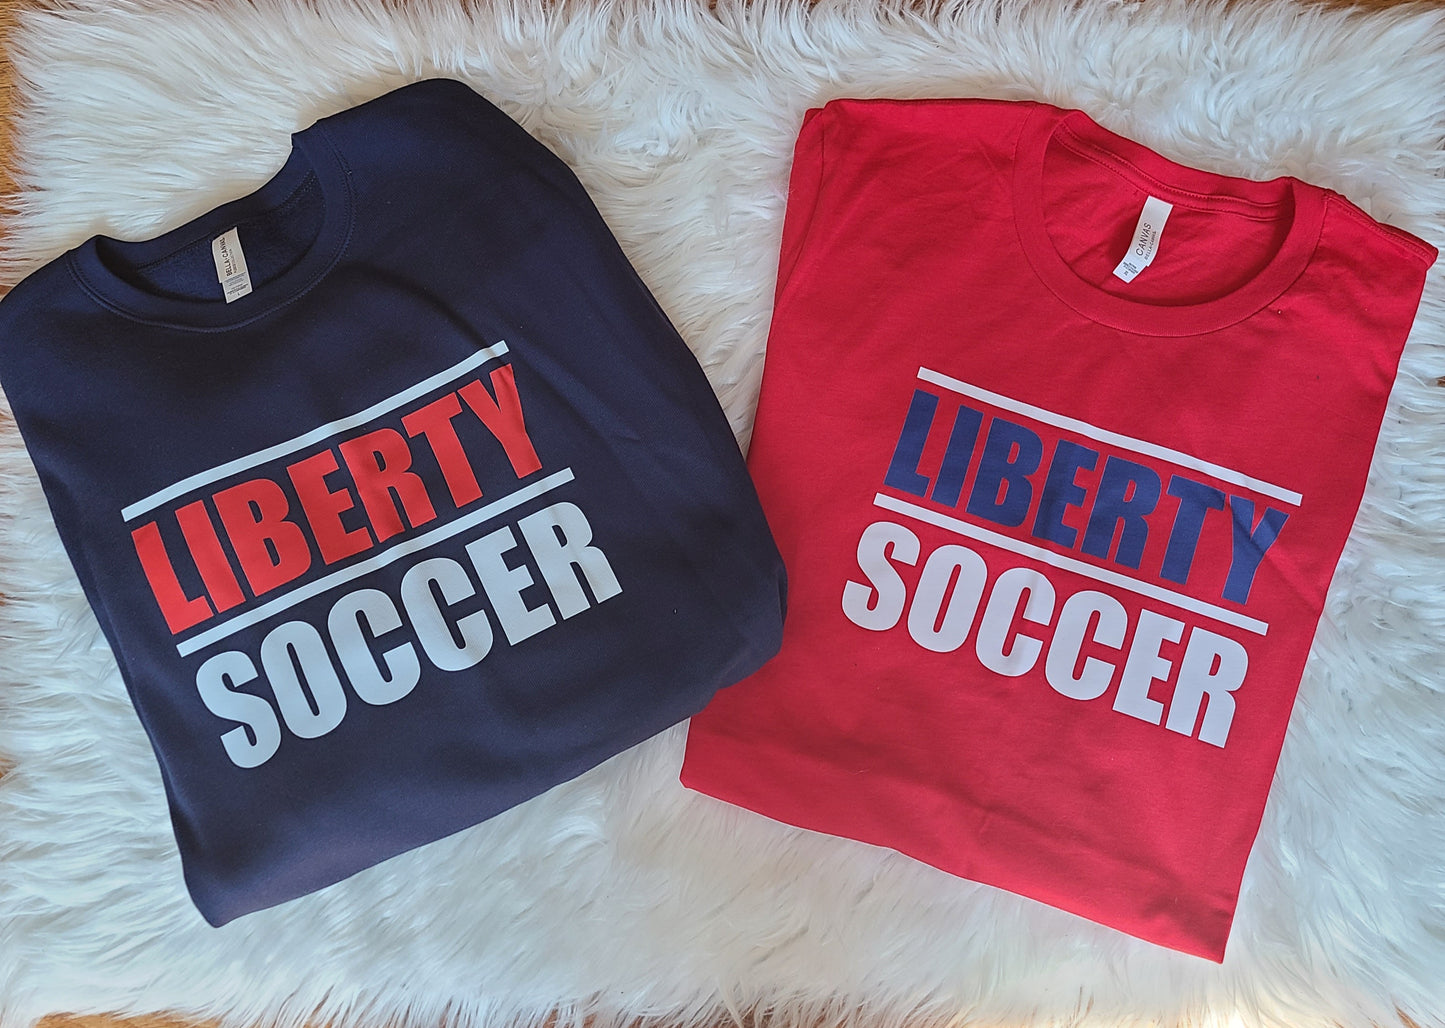 Liberty Soccer no L